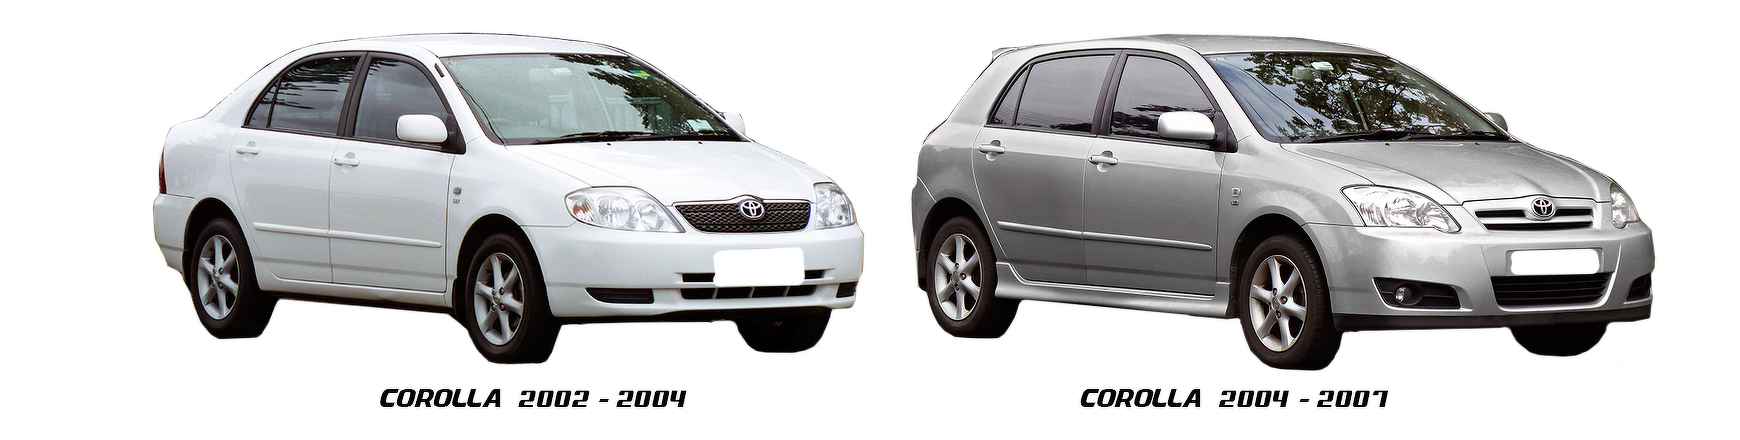 Piezas y Recambios de Toyota Corolla (E12) de 2004 a 2007 | Veramauto.es